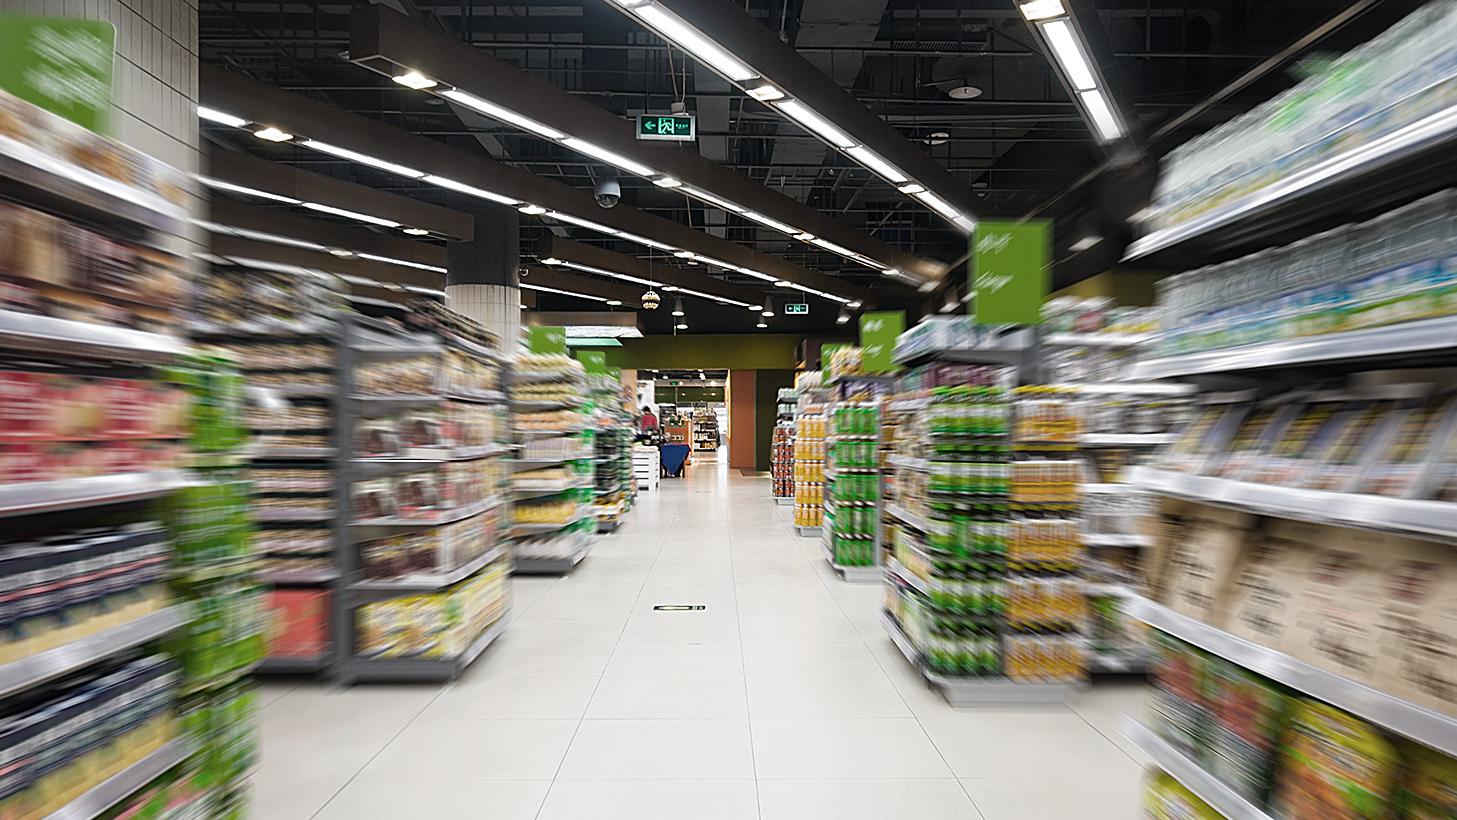 Innenansicht eines Supermarktes mit befüllten Regalen und einer LED-Beleuchtung